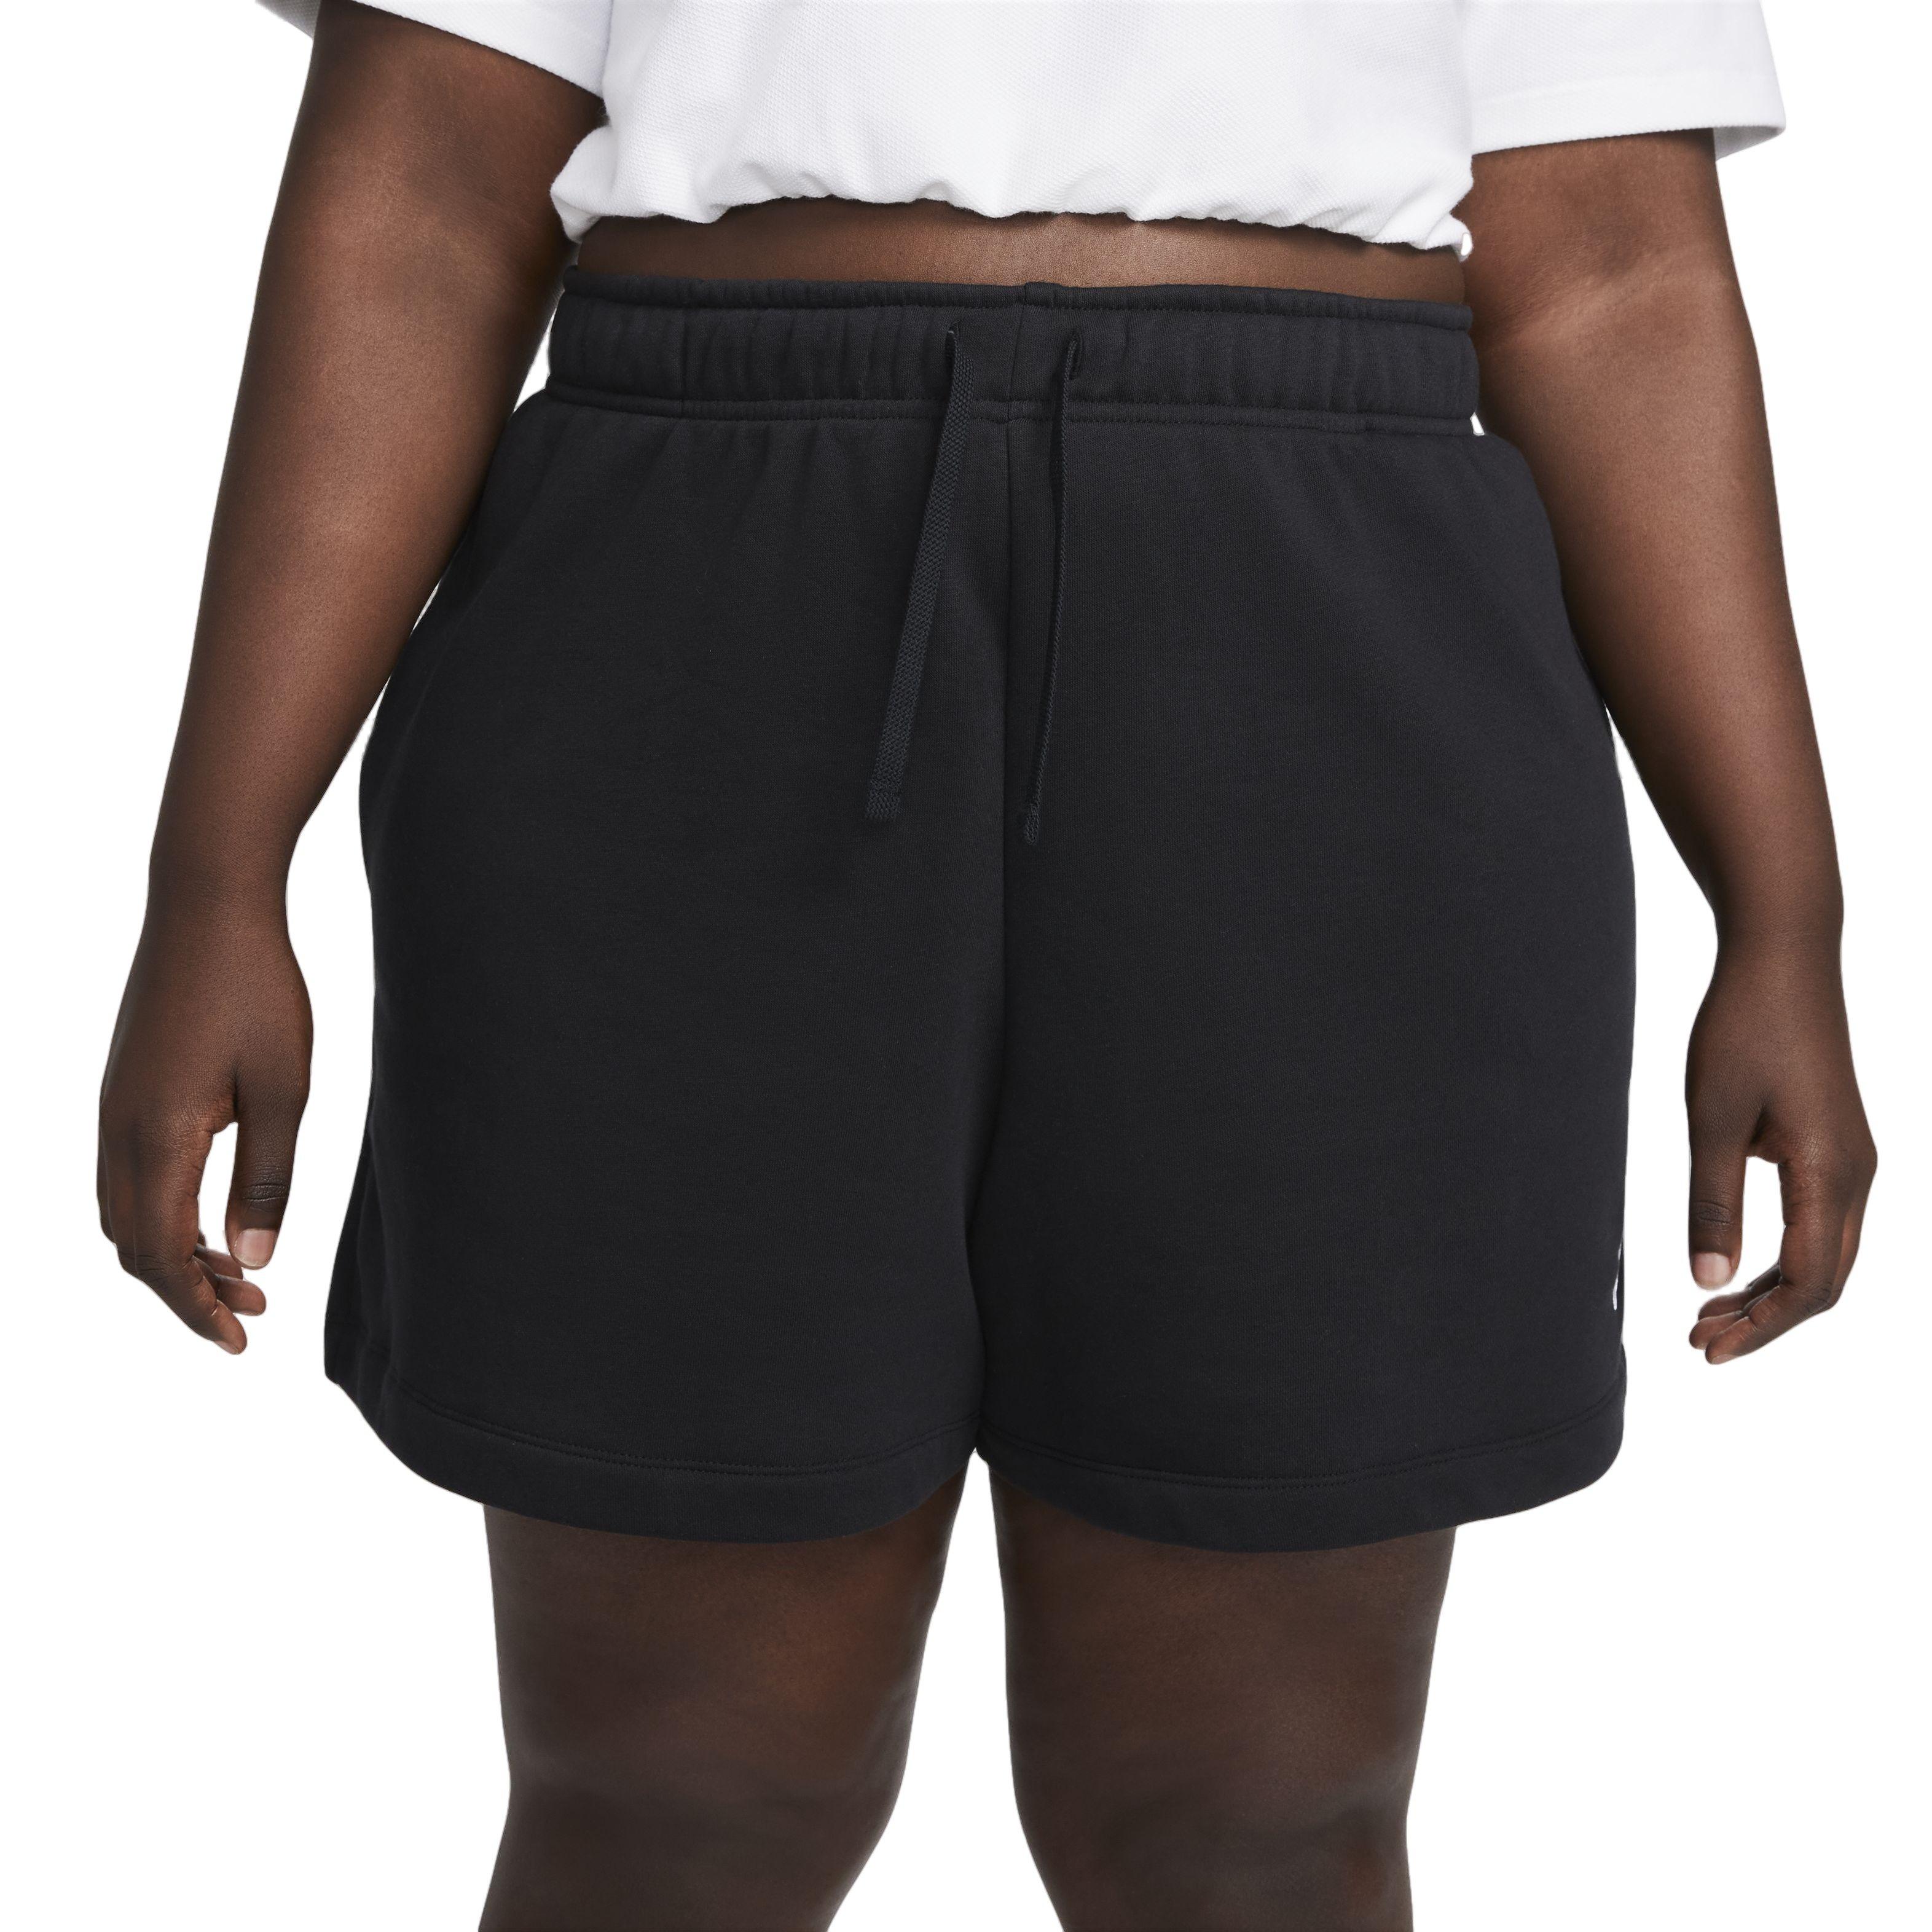 Short Nike Sportswear Essential noir femme